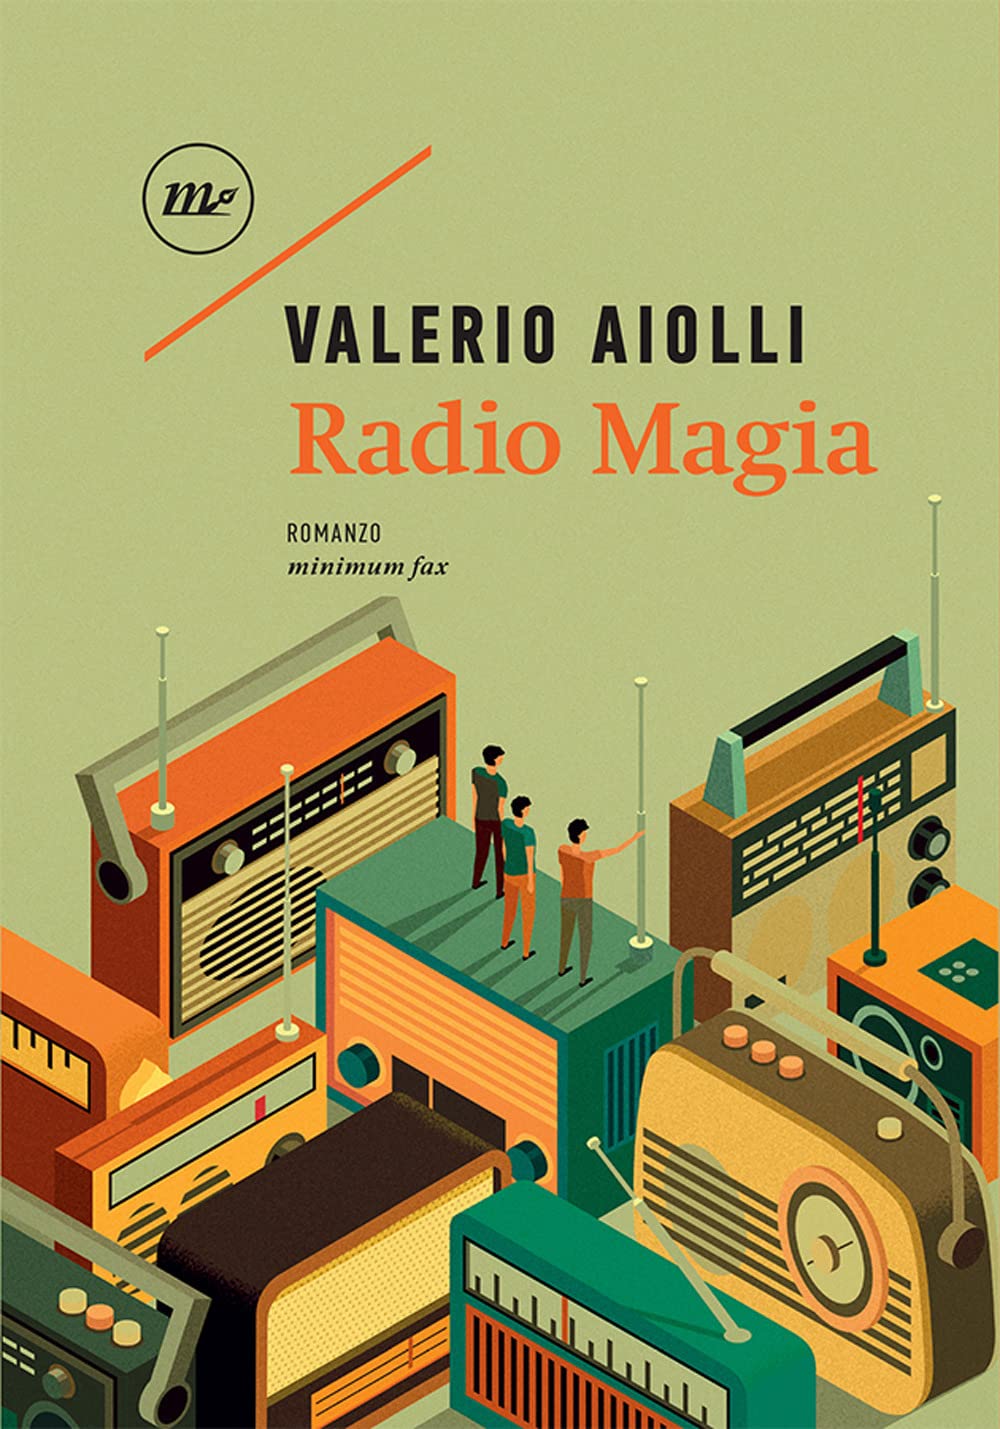 Radio Magia di Valerio Aiolli – Recensione